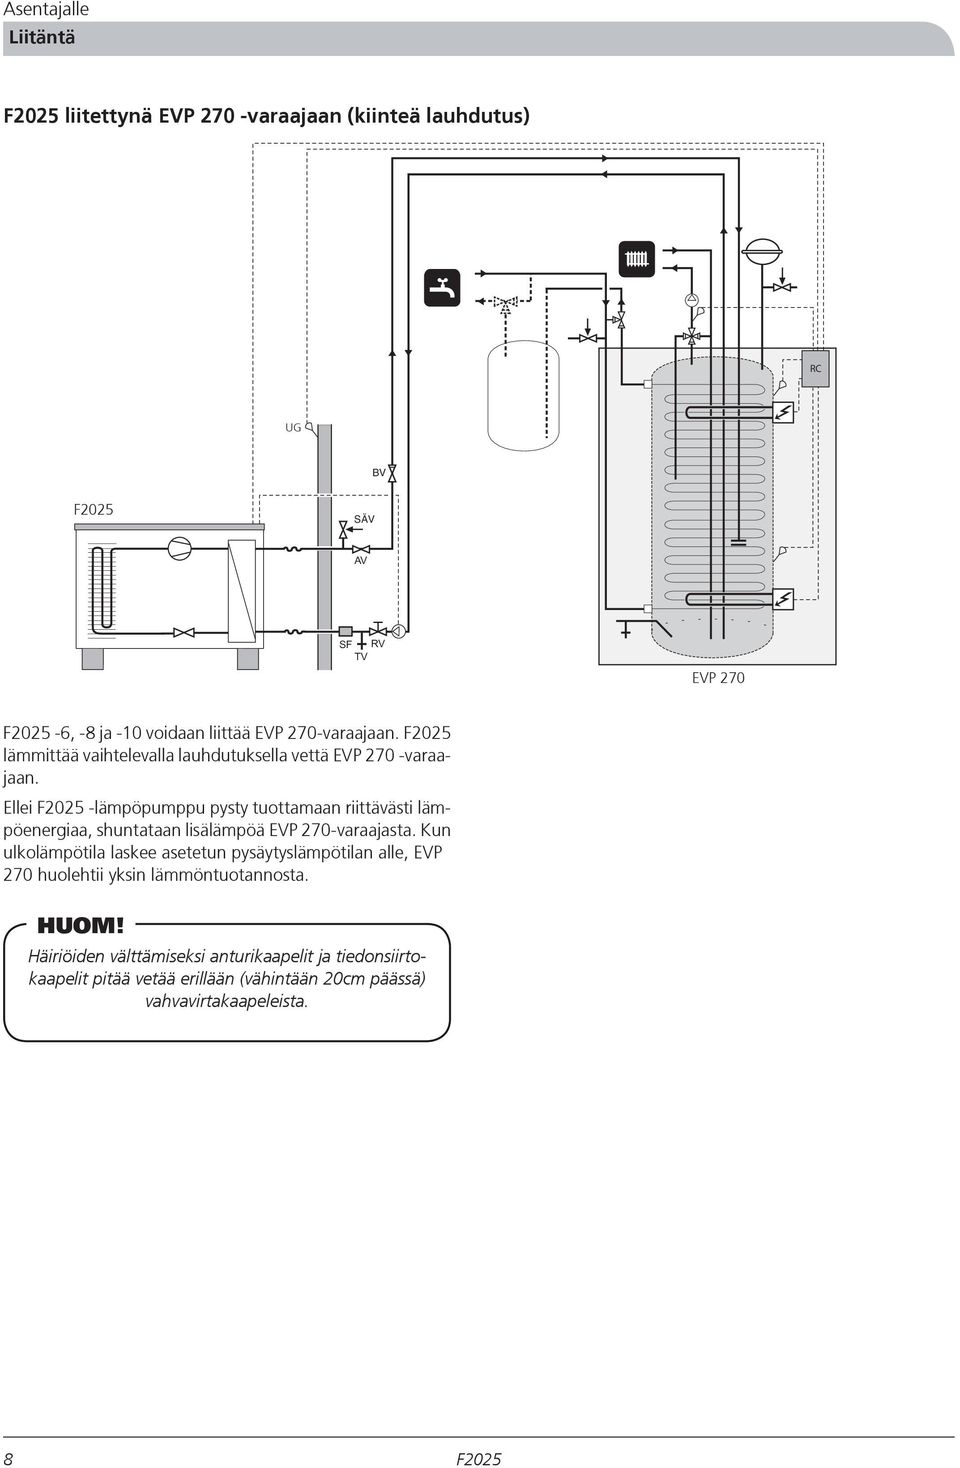 Ellei -lämpöpumppu pysty tuottamaan riittävästi lämpöenergiaa, shuntataan lisälämpöä EVP 270-varaajasta.